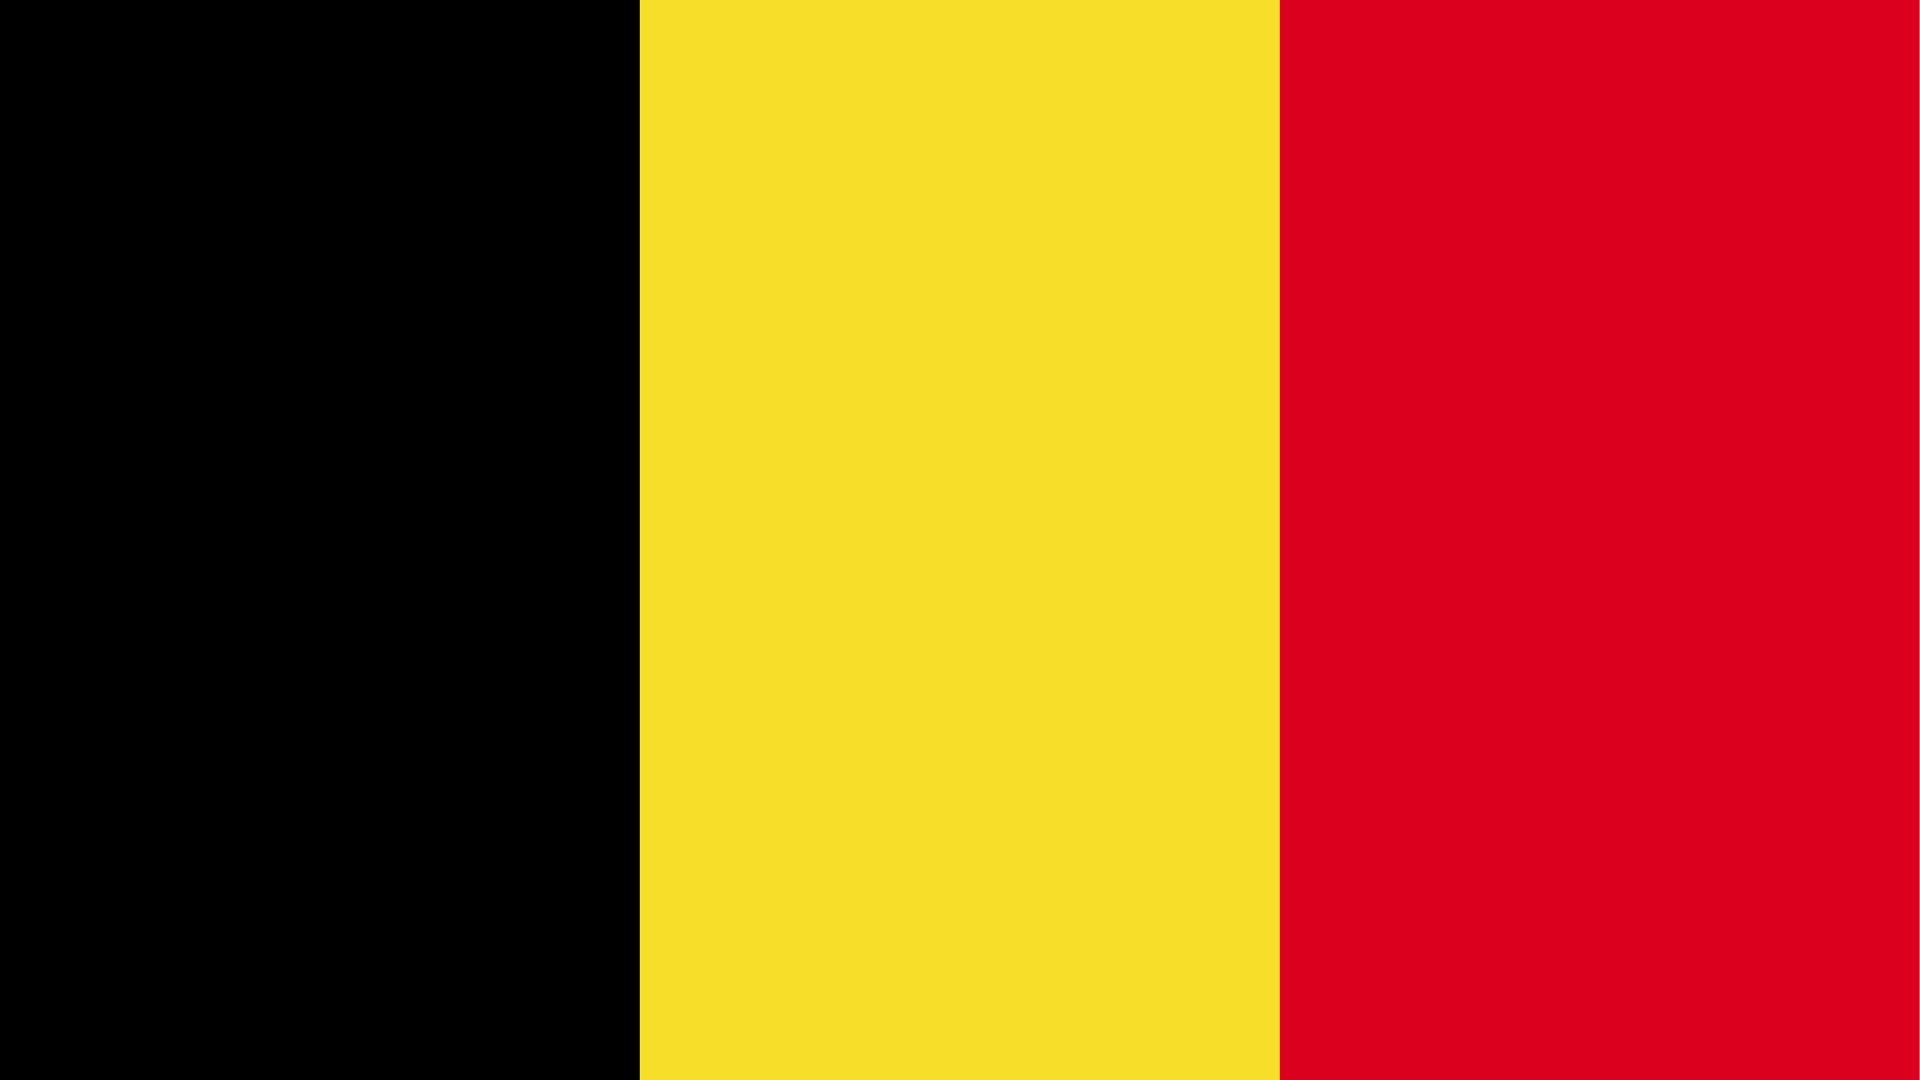 A bandeira da Bélgica é composta por três listas verticais nas cores preta, amarela e vermelha.